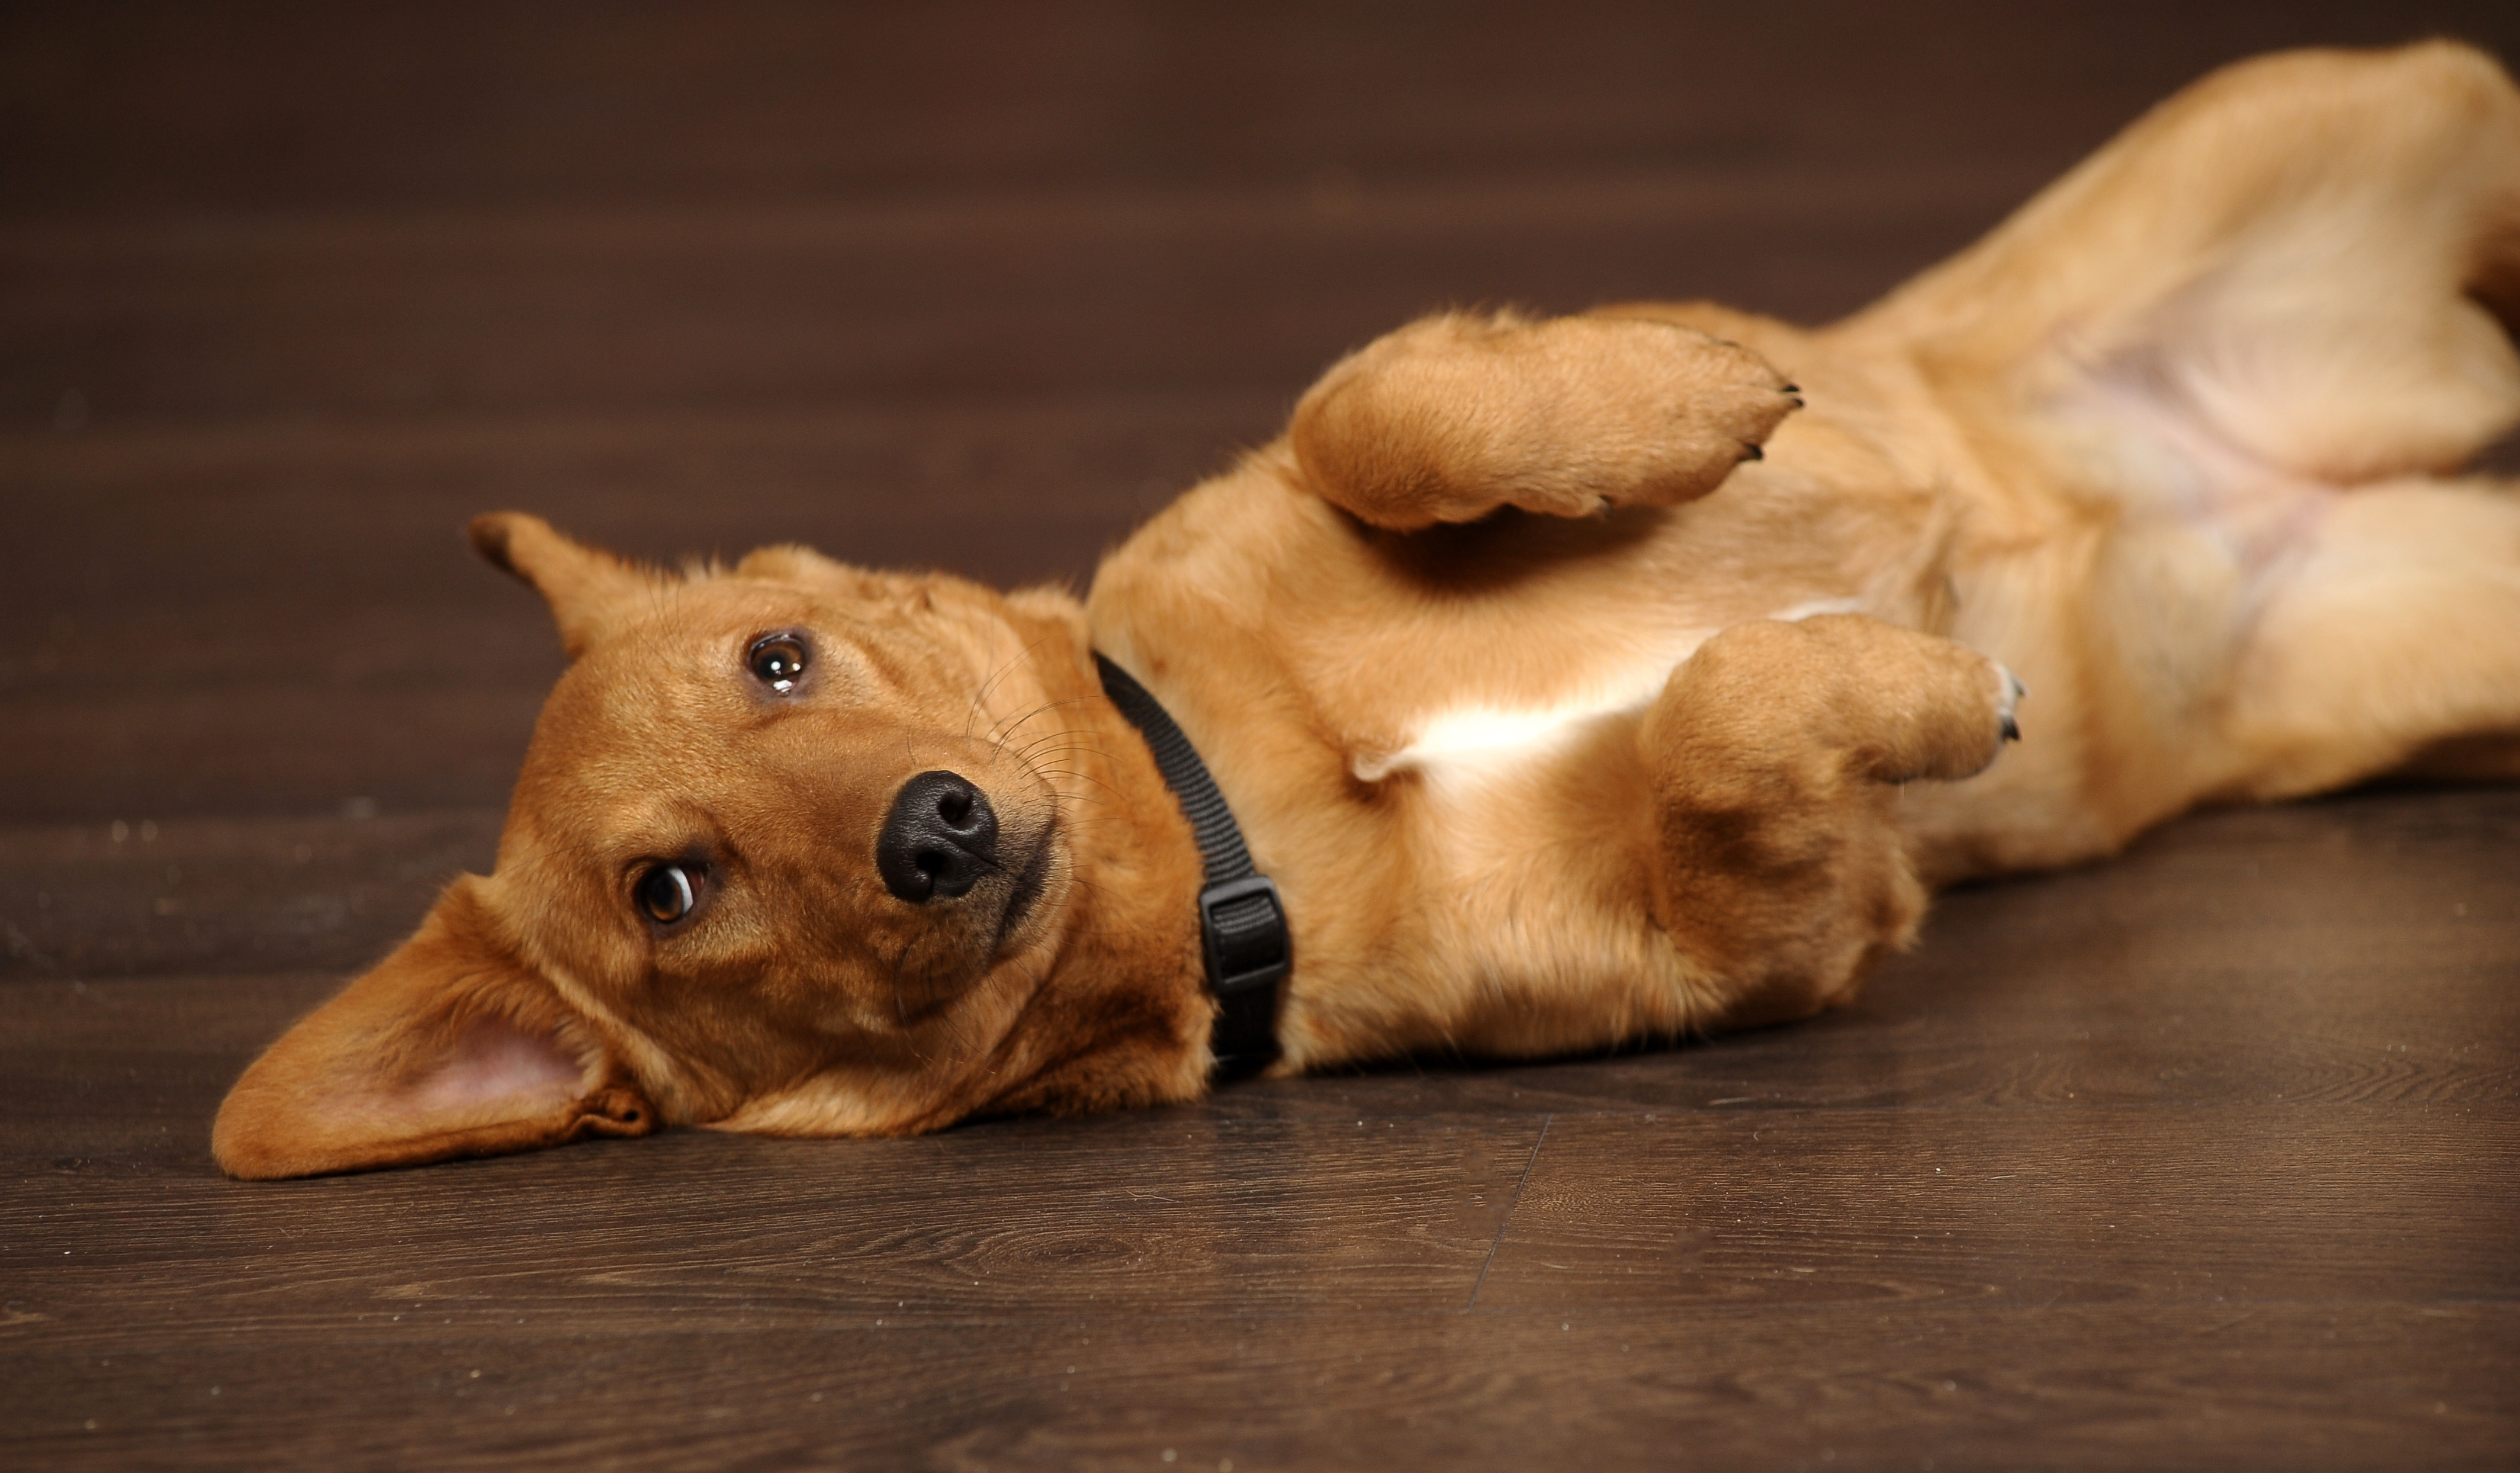 Barnlig At bidrage tankevækkende Hunde med luft i maven (flatulens) | zooplus hundemagasinet